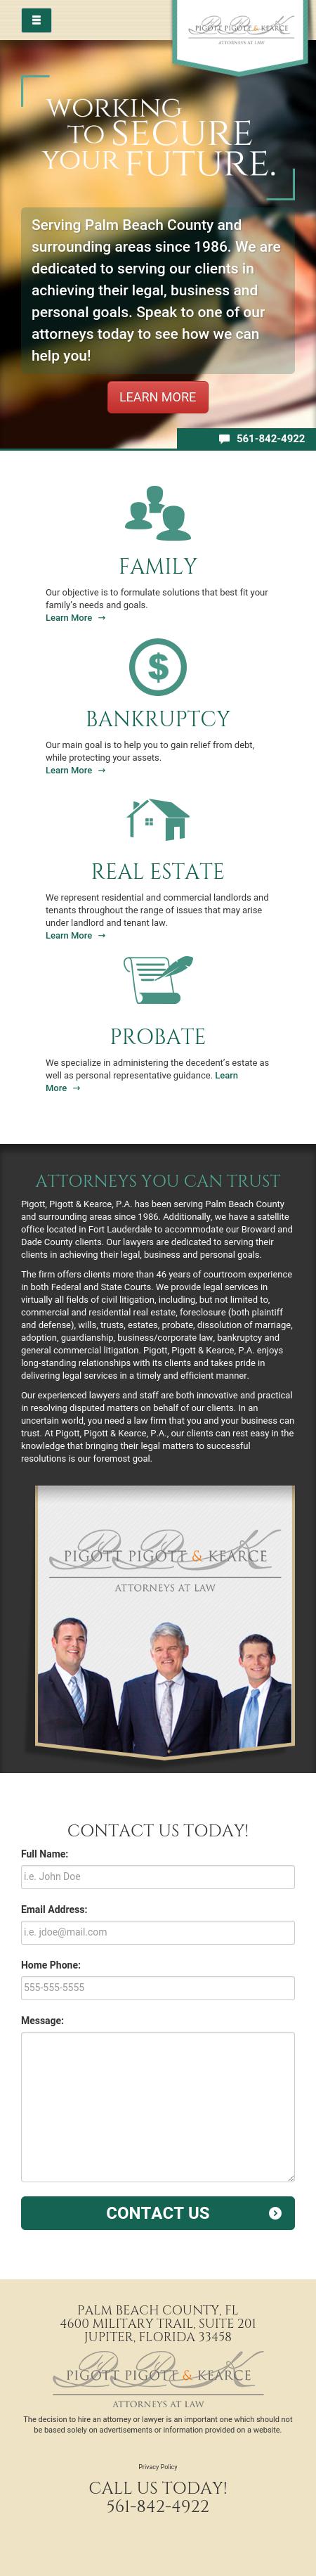 Pigott Pigott & Kearce - North Palm Beach FL Lawyers